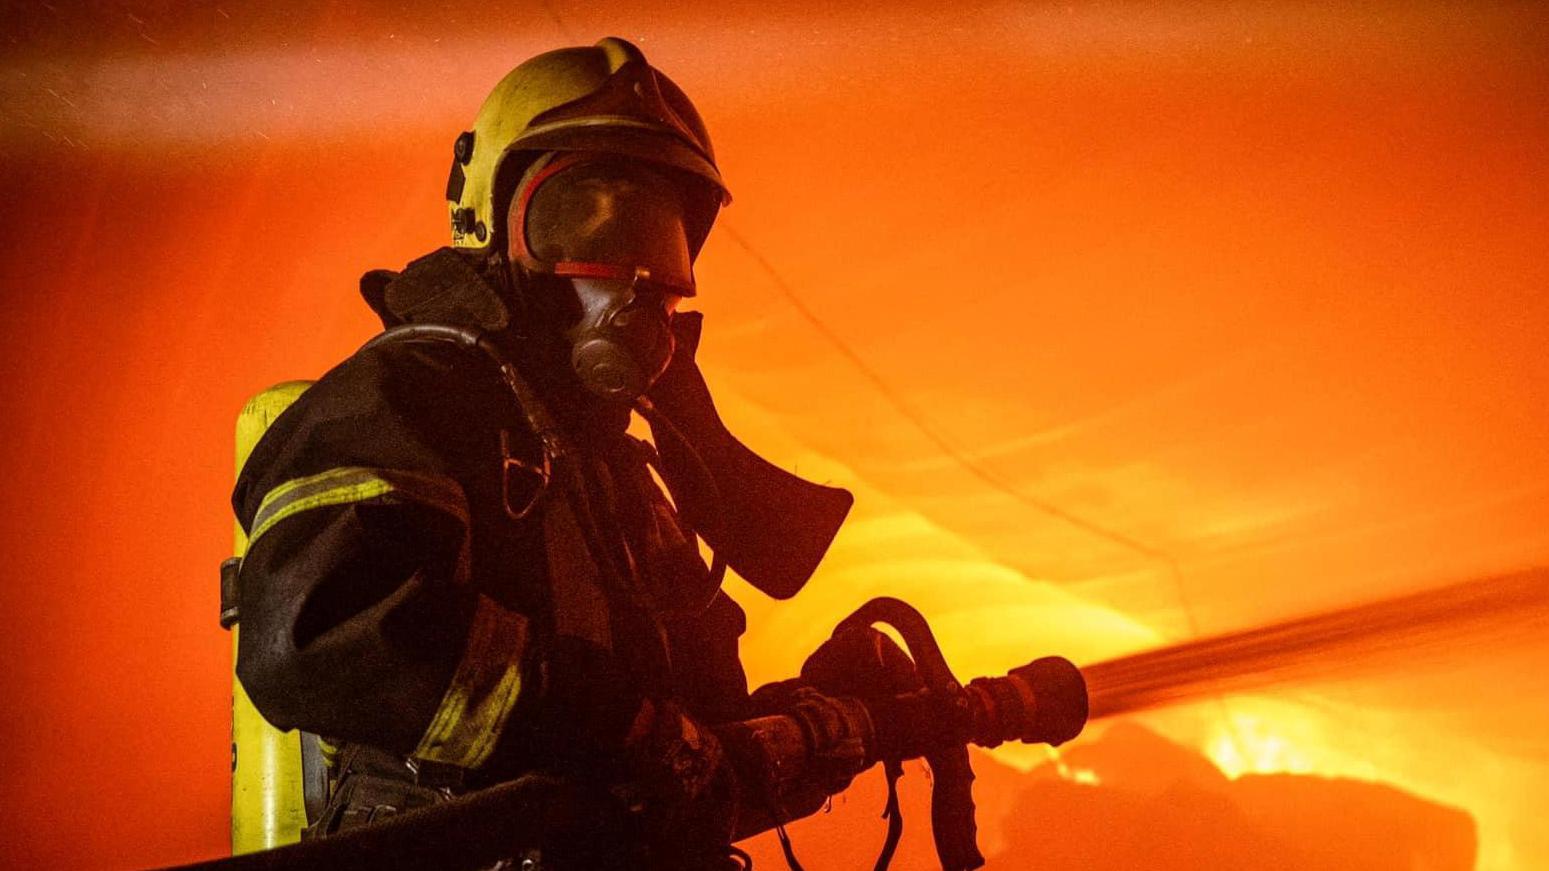  رجل إطفاء يعمل في موقع من منشآت التخزين التي تعرضت لضربات صاروخية وطائرات مسيرة روسية، على أوديسا، أوكرانيا، 19 يوليو / تموز 2023.